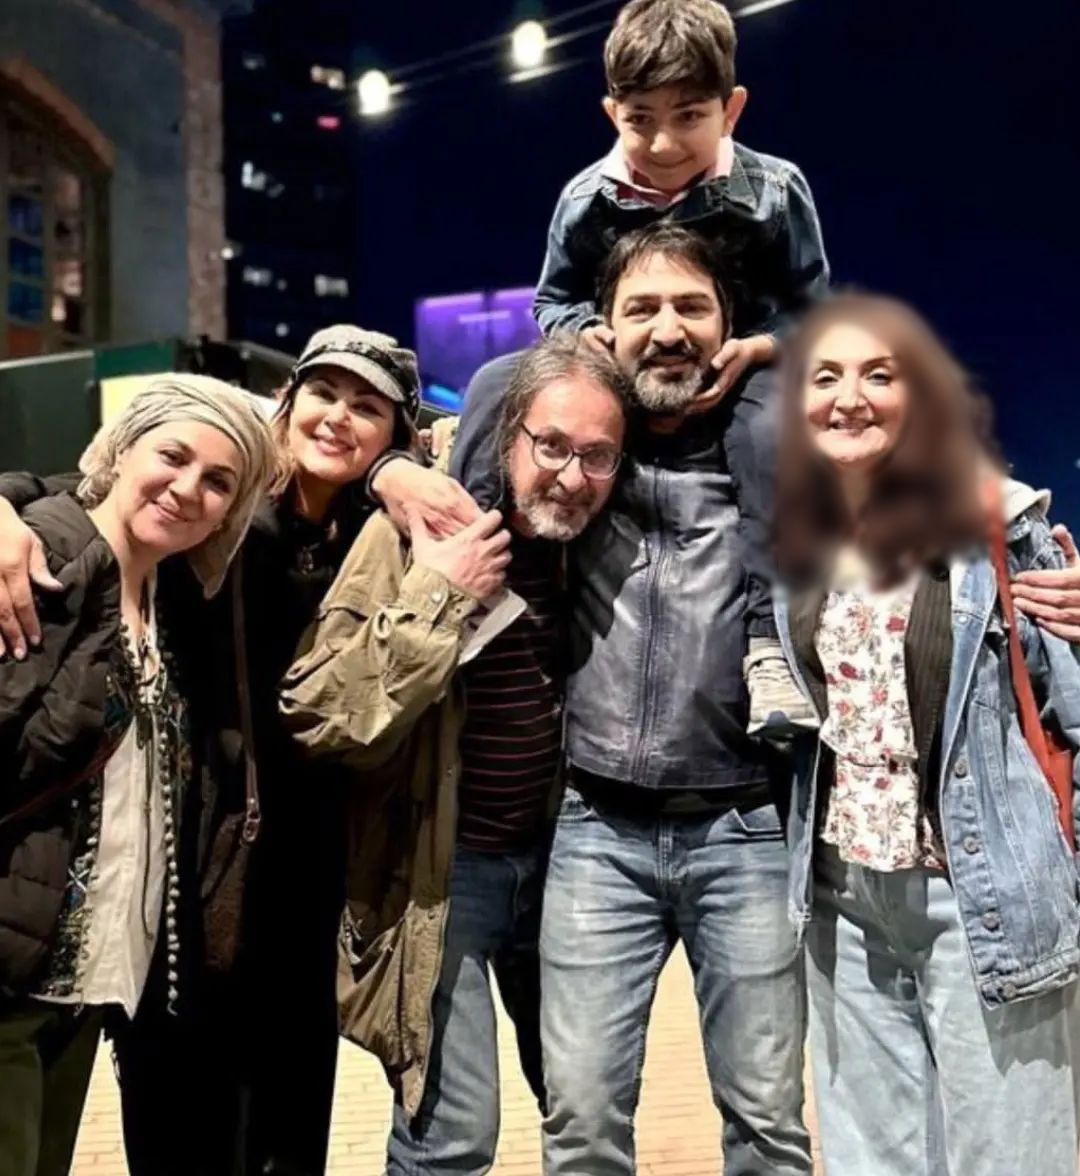 عکس پربازدید و خانوادگی از لاله و ستاره اسکندری در کانادا